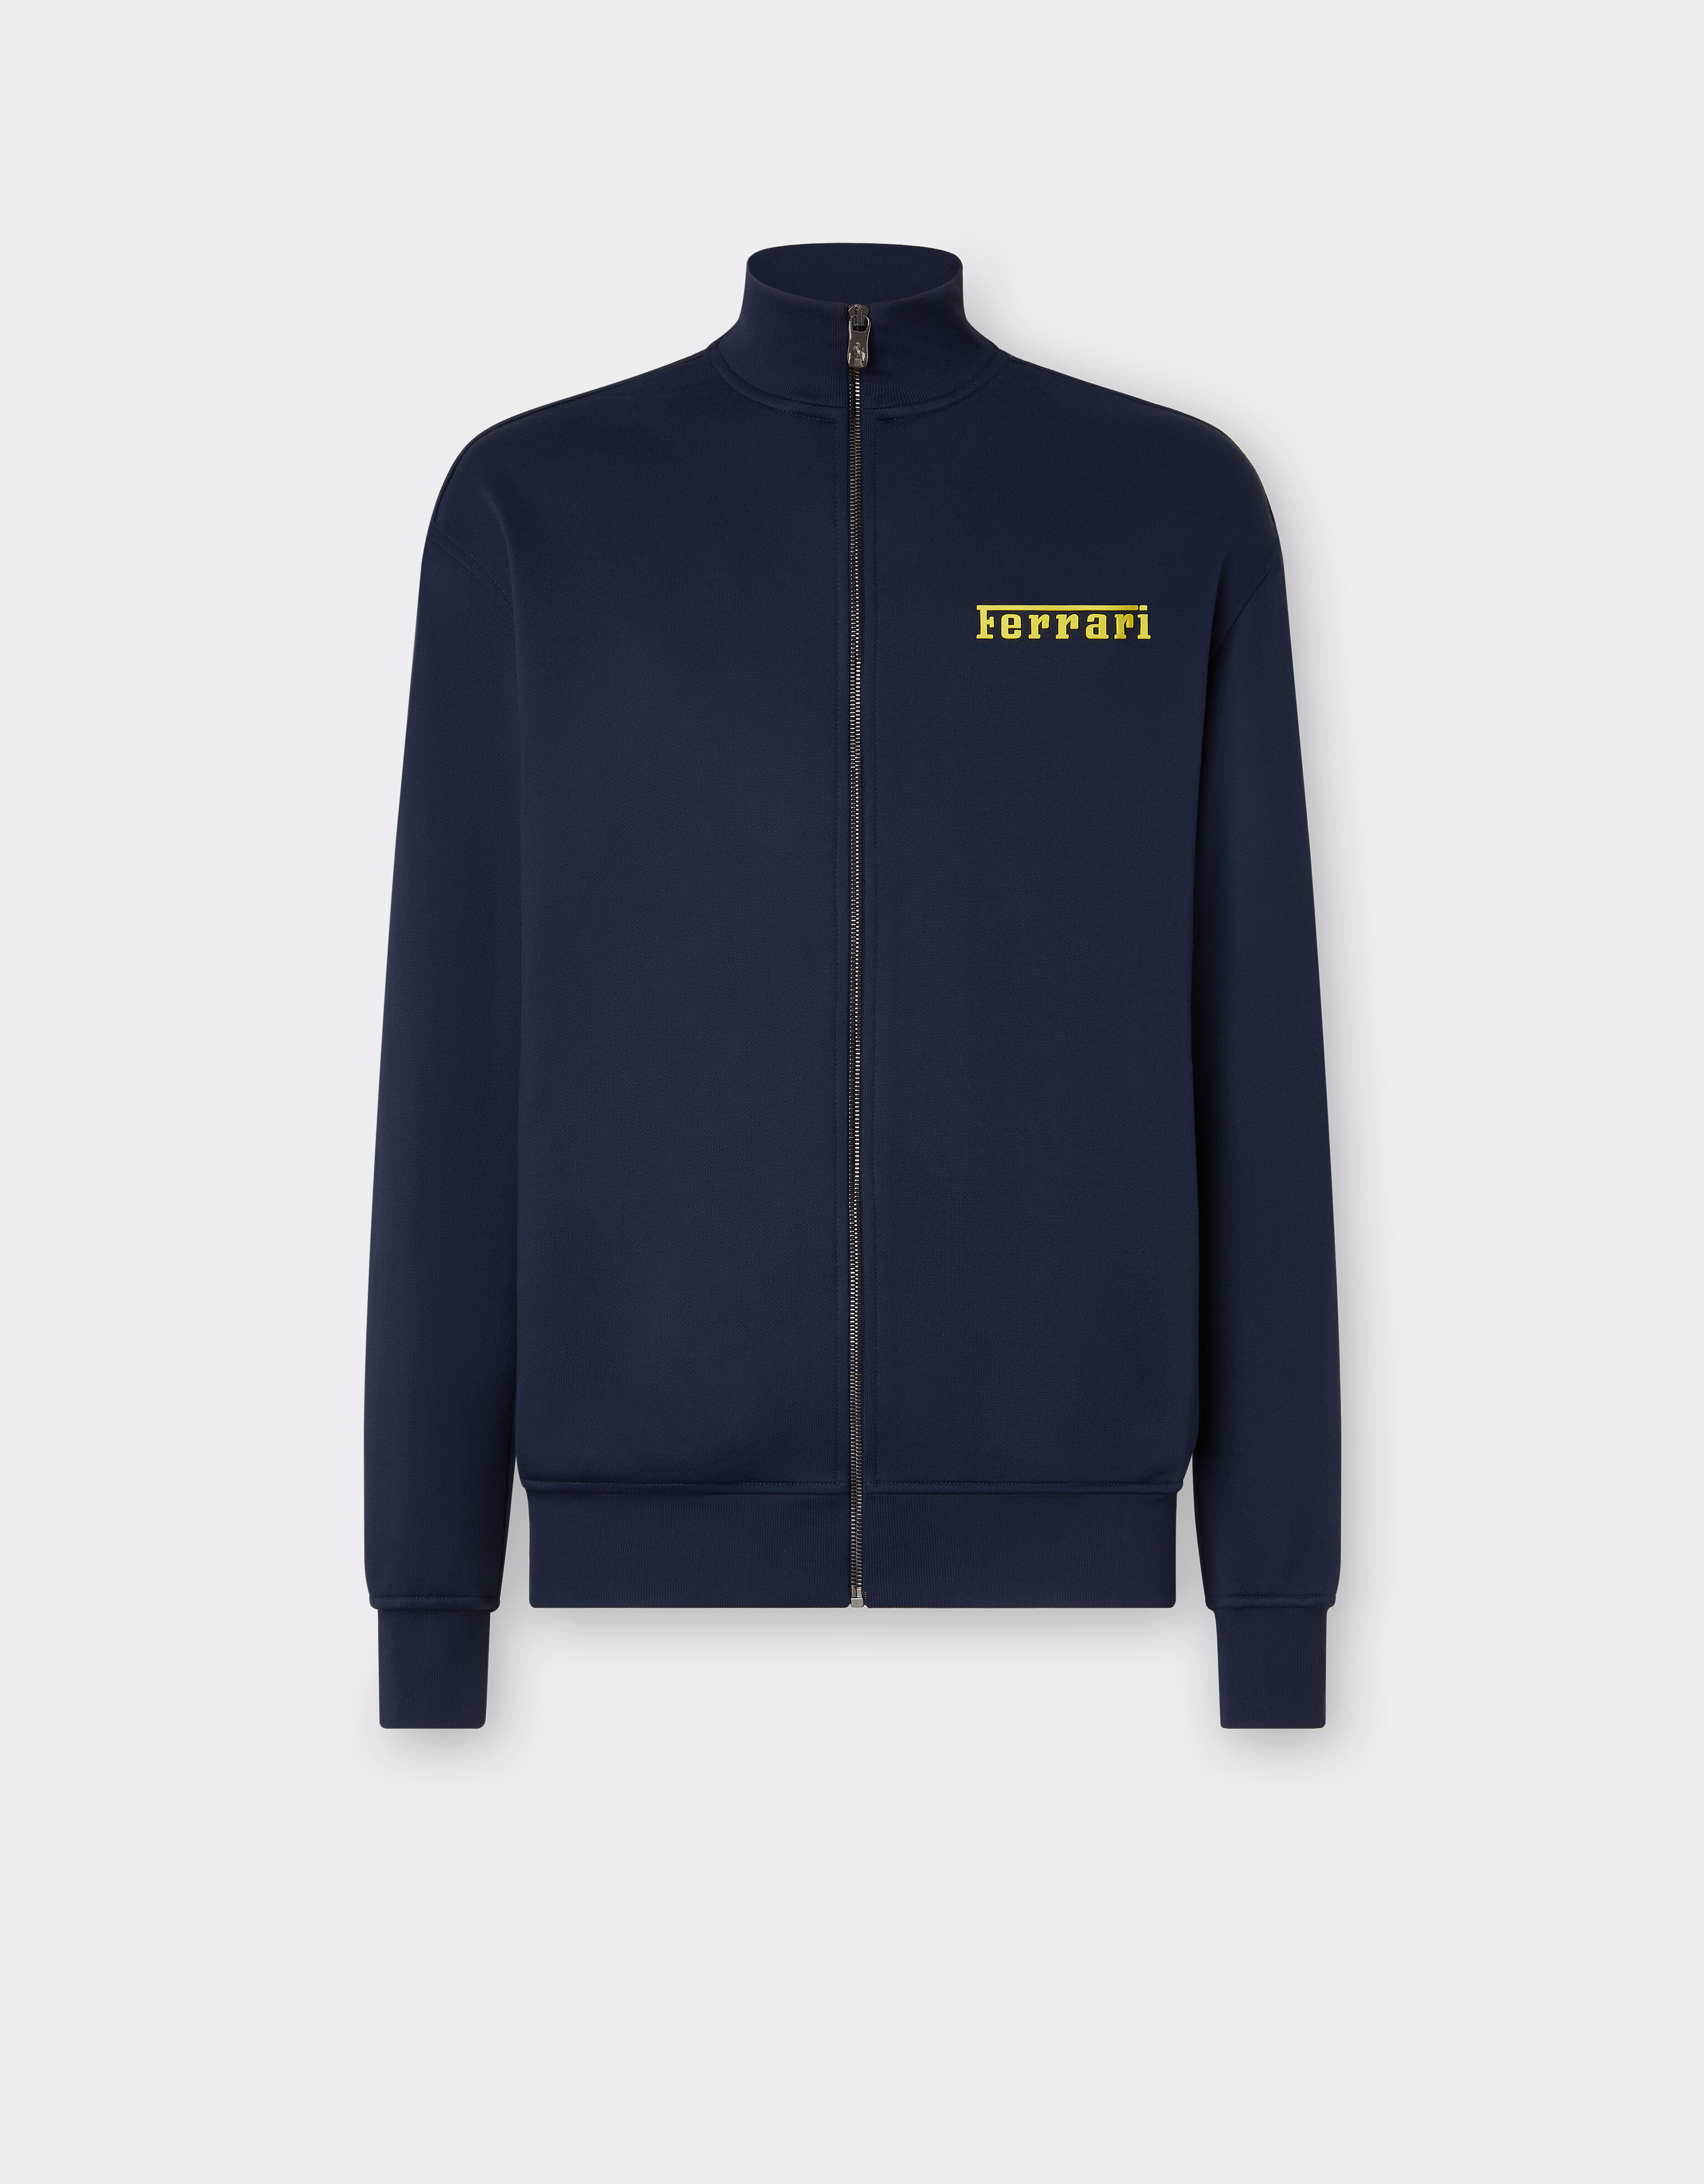 Ferrari Sweatshirt with zip and Ferrari logo Azure F1213f